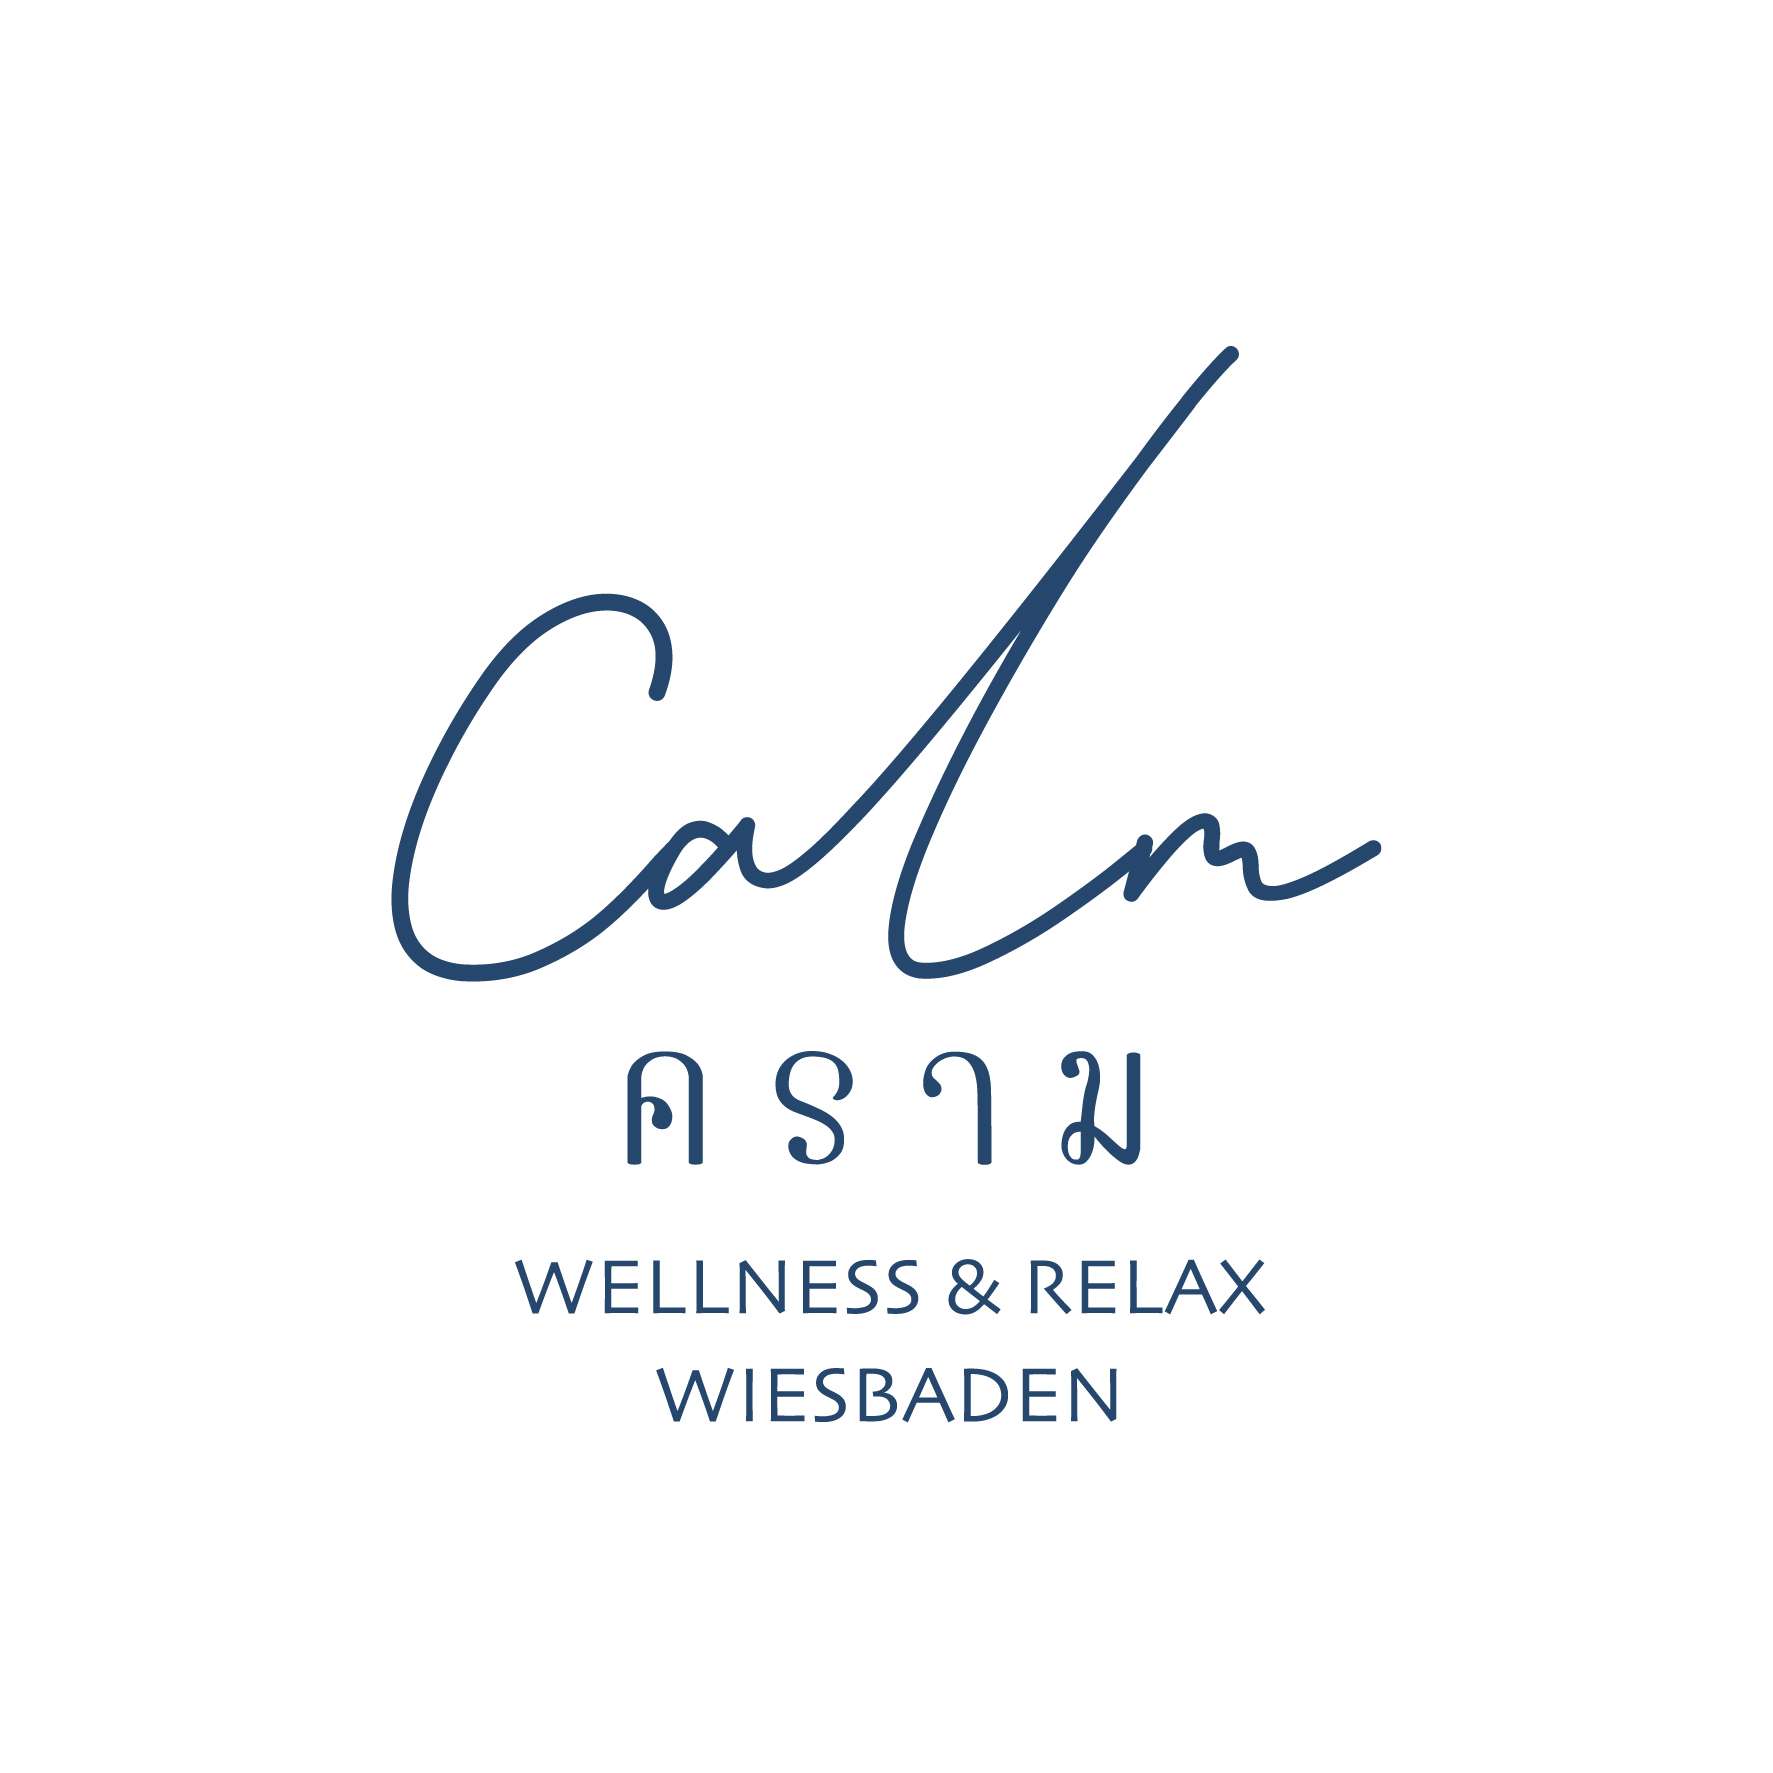 www.calmspawiesbaden.de